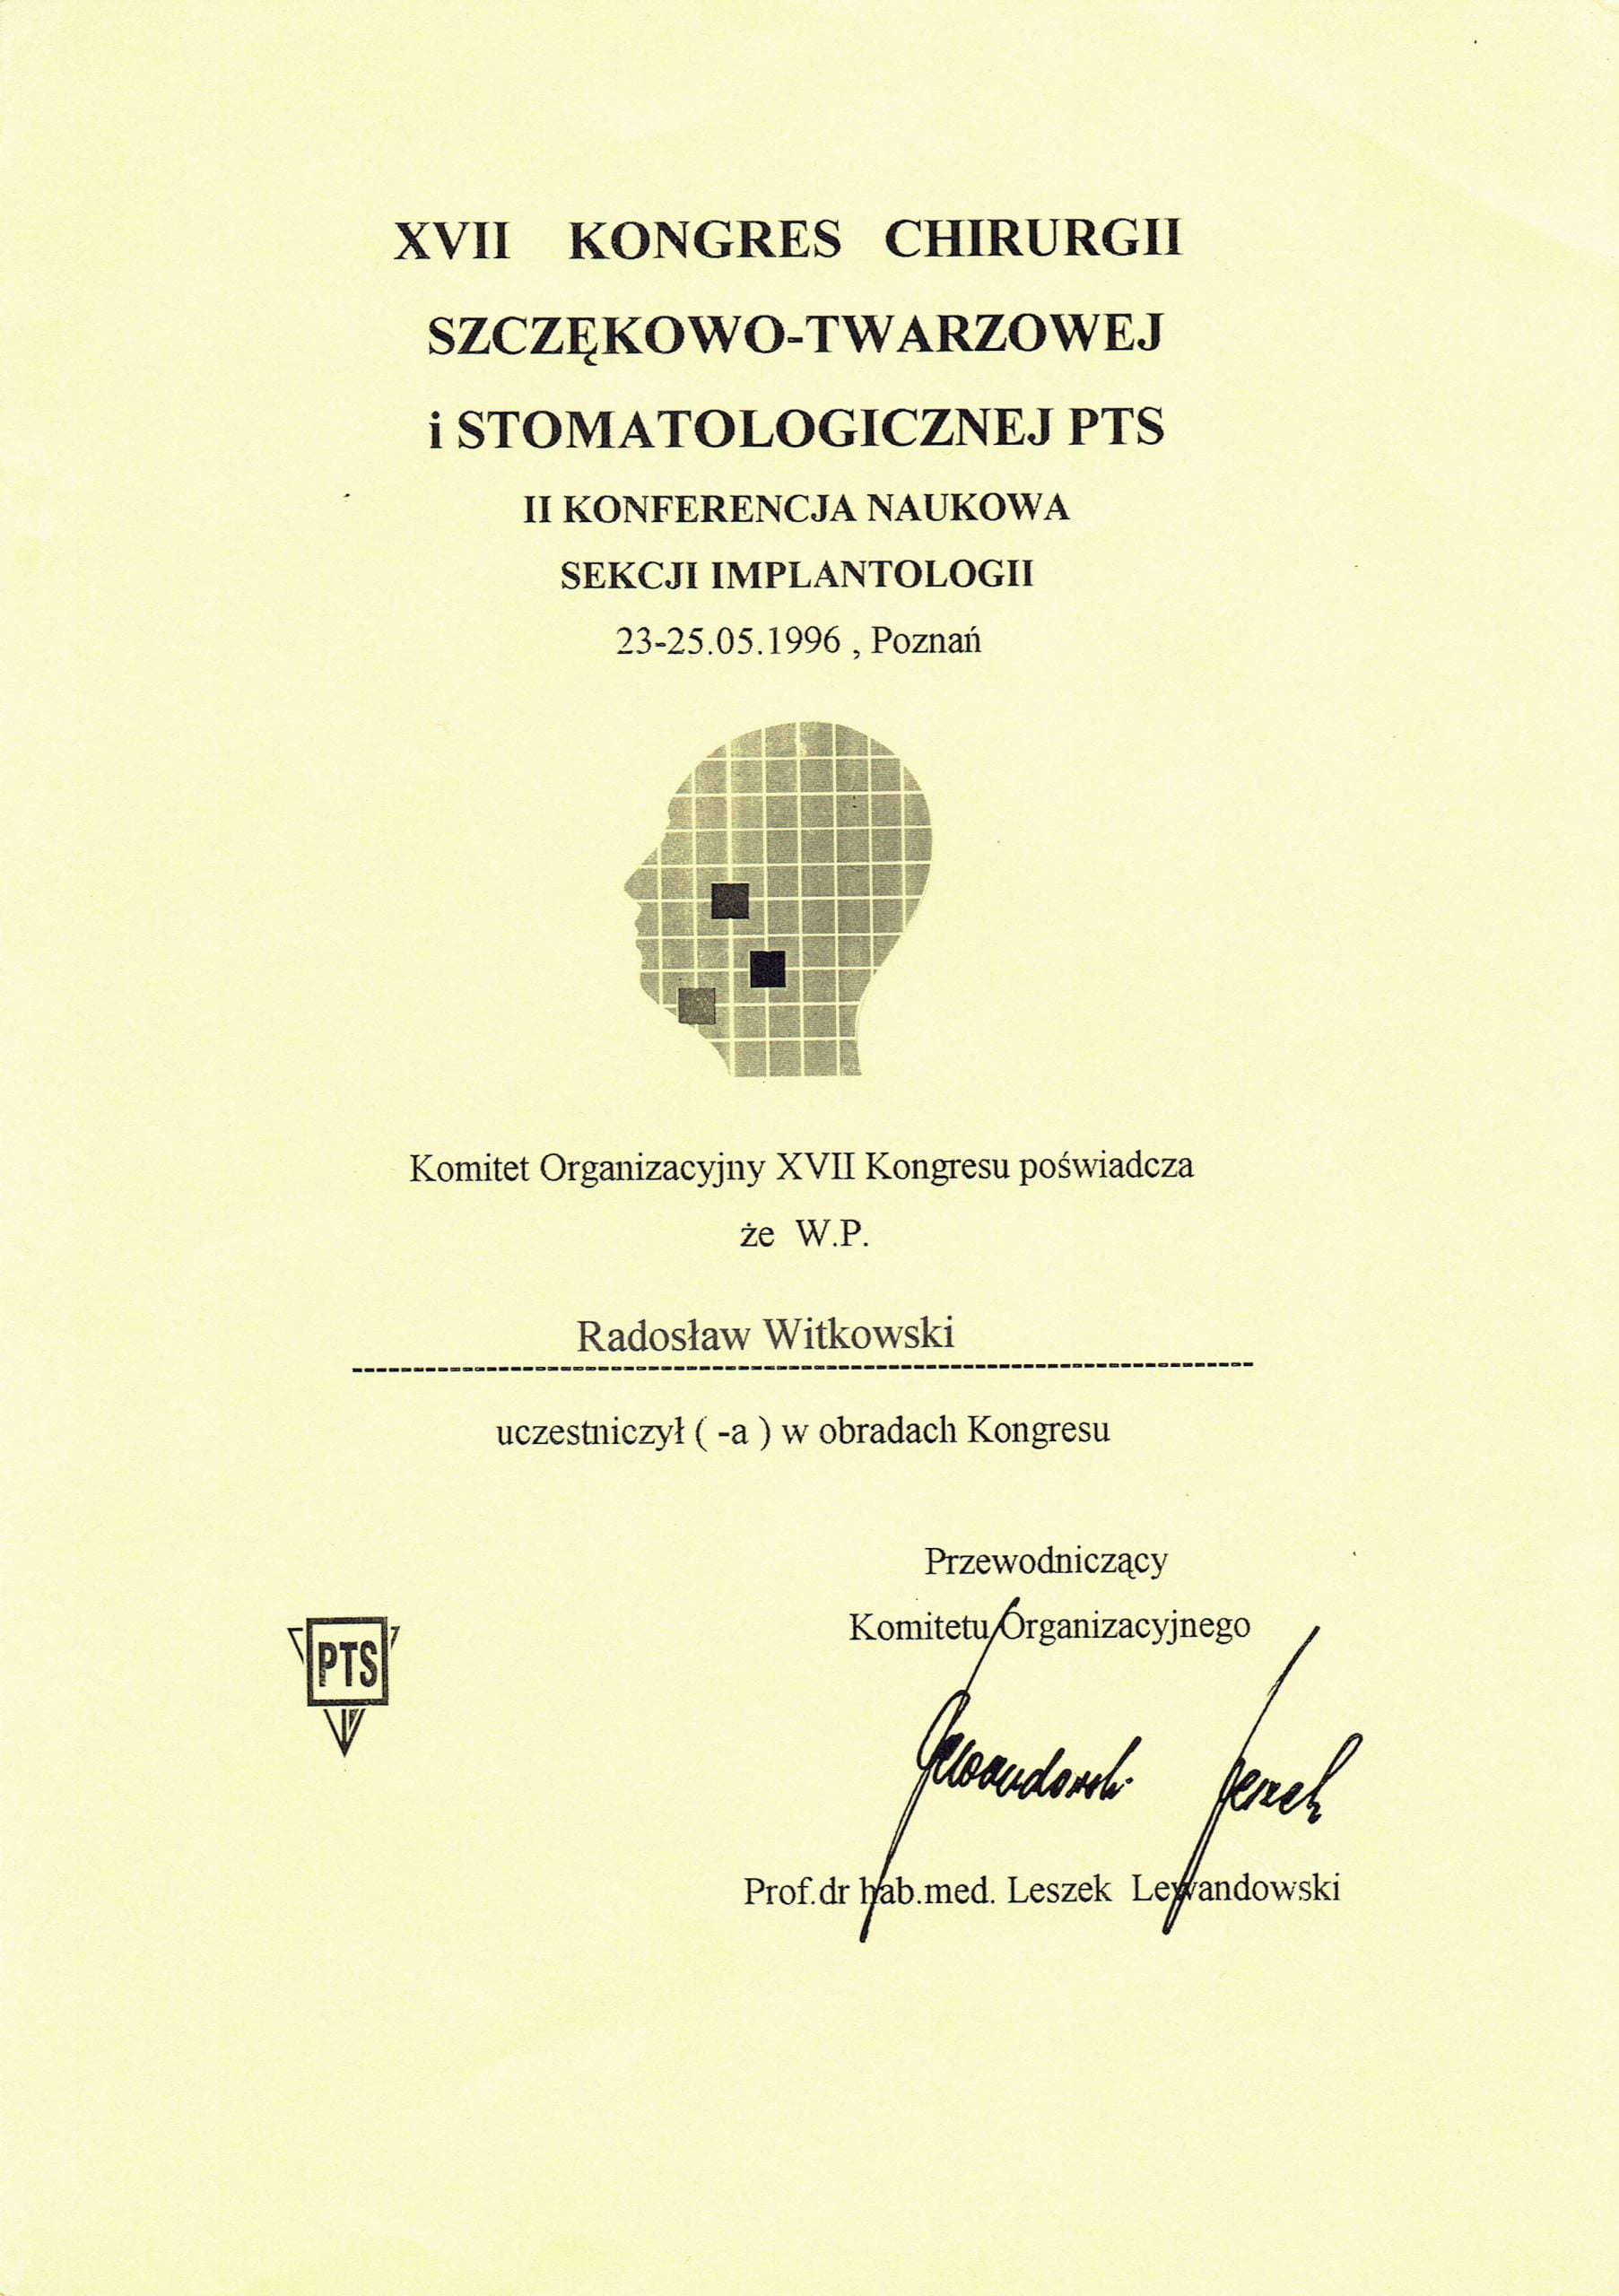 Radosław Witkowski certyfikat 8